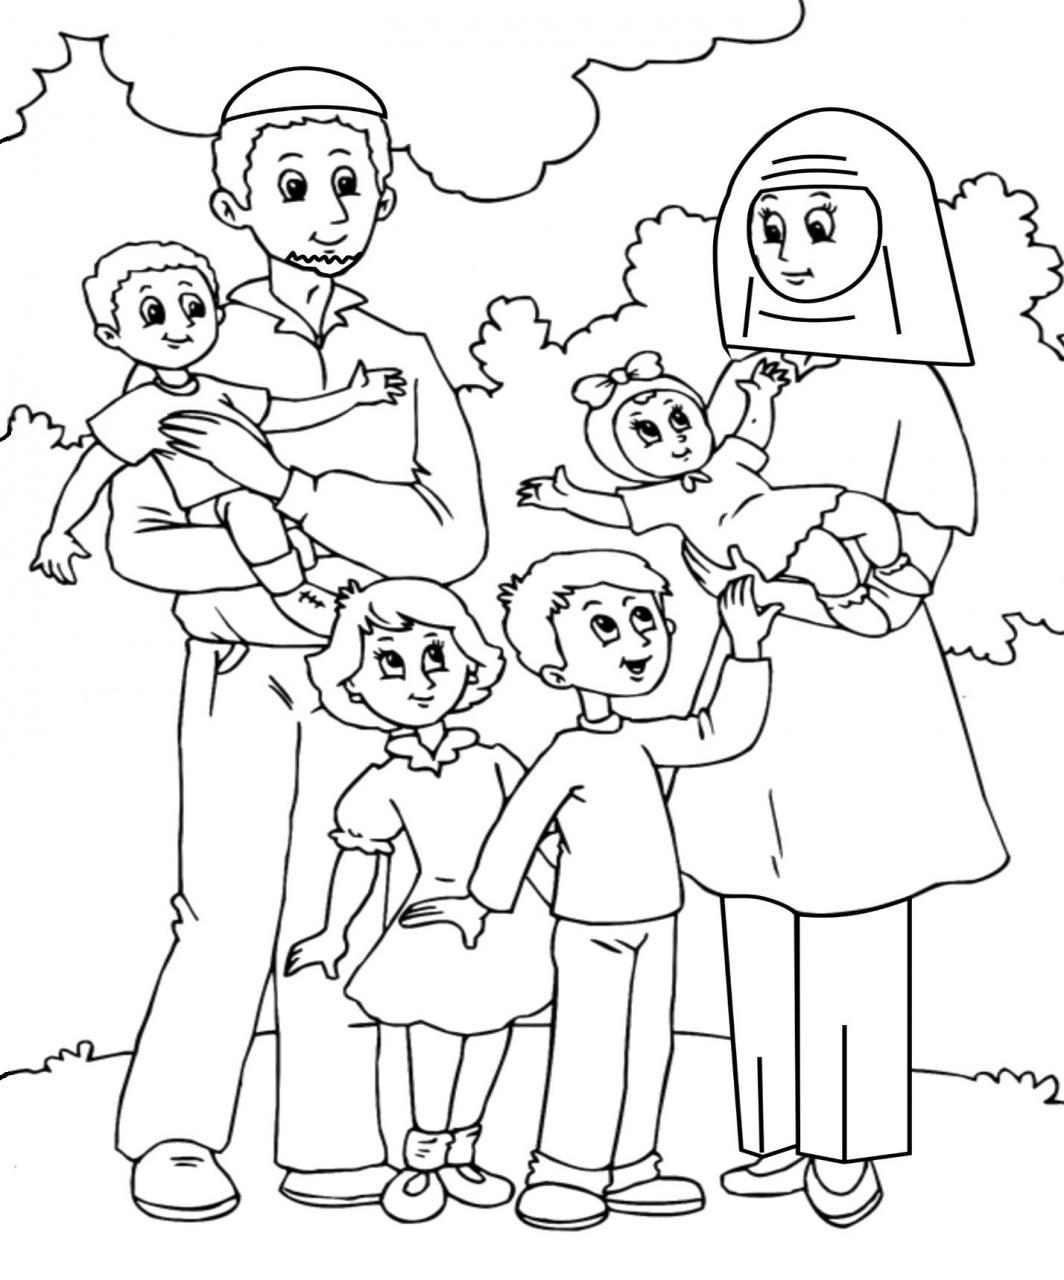 tuyen tap tranh to mau gia dinh hanh phuc tang be 13 - Tuyển tập tranh tô màu gia đình hạnh phúc tặng bé